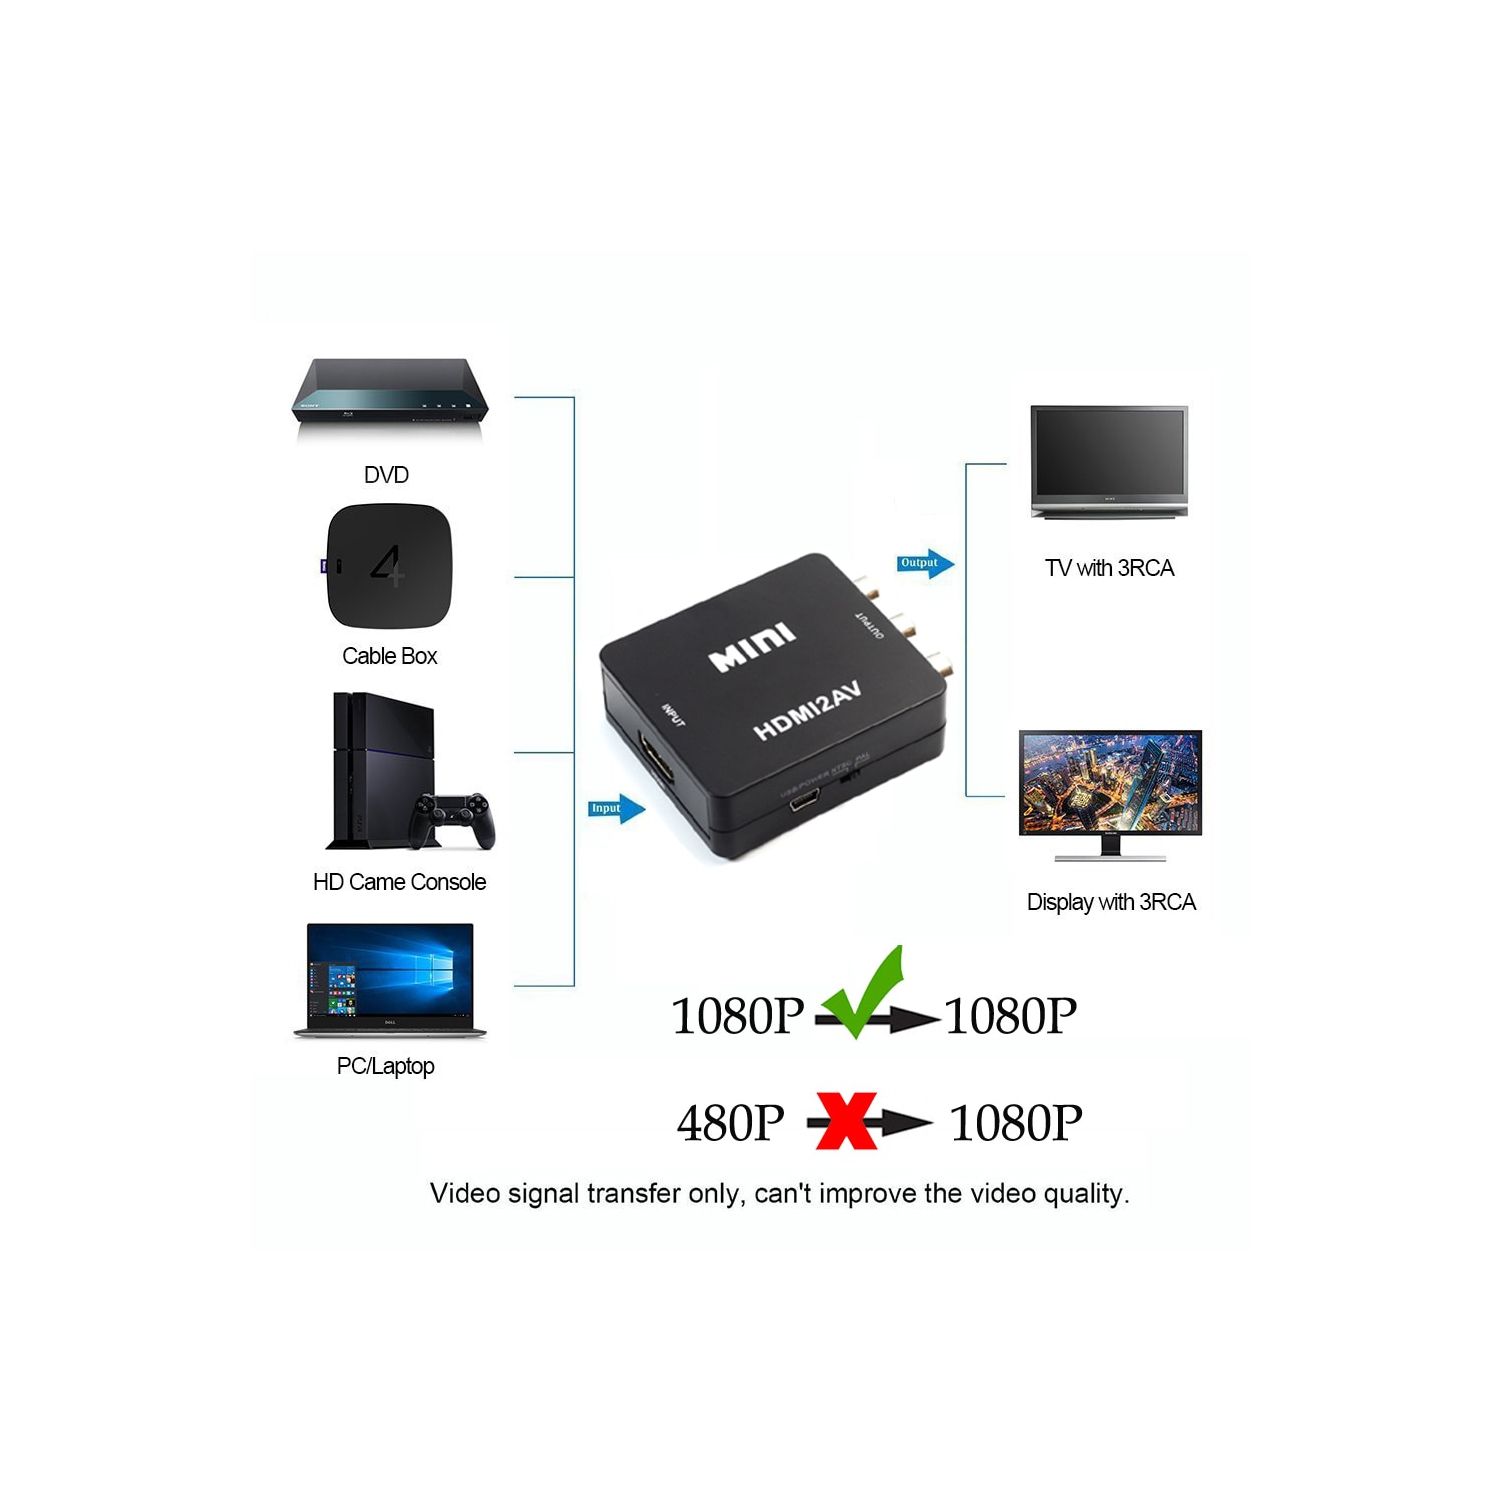 Musou Convertisseur RCA vers HDMI 1080P AV vers HDMI Adaptateur AV vers HDMI  Convertisseur pour Xbox PS2 Wii Snes N64 VHS VCR Enregistreur vidéo DVD  Supporte PAL/NTSC en destockage et reconditionné chez